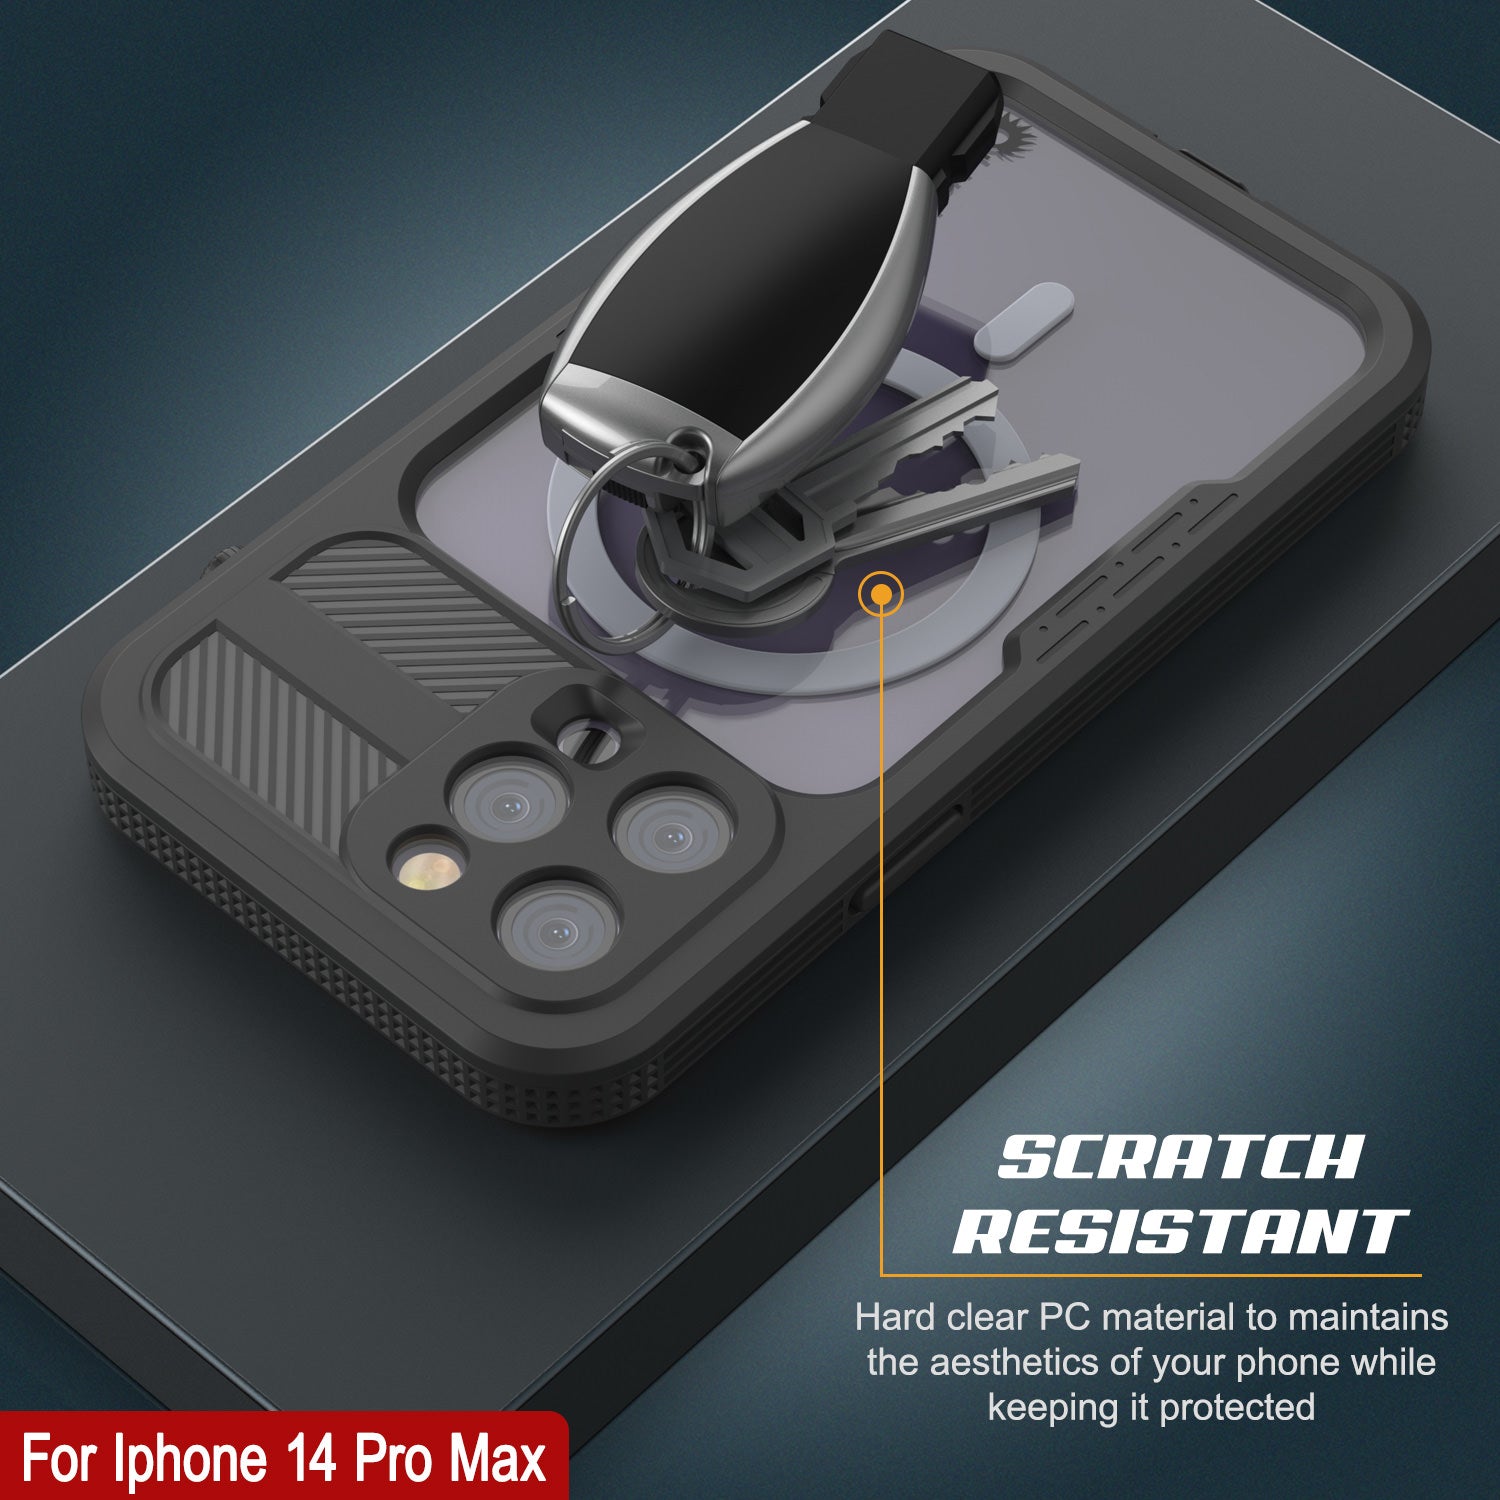 iPhone 14 Pro Max Waterproof Case [Alpine 2.0 Series] [Slim Fit] [IP68 Certified] [Shockproof] [Black]